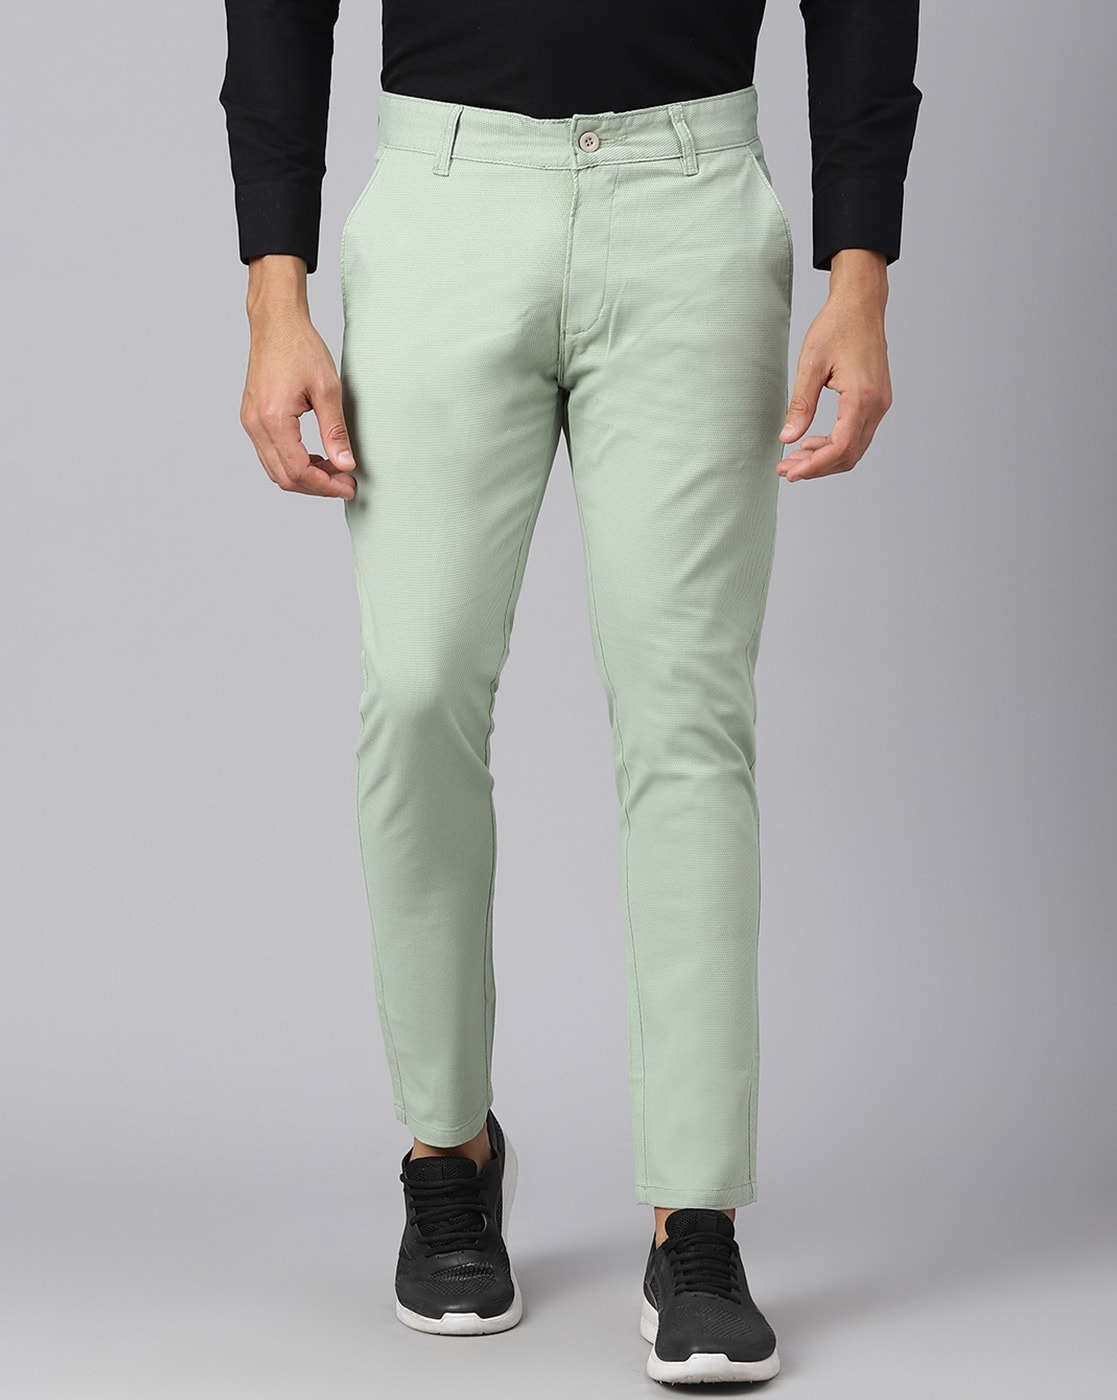 Light Green Cotton Trouser For Men's – united18